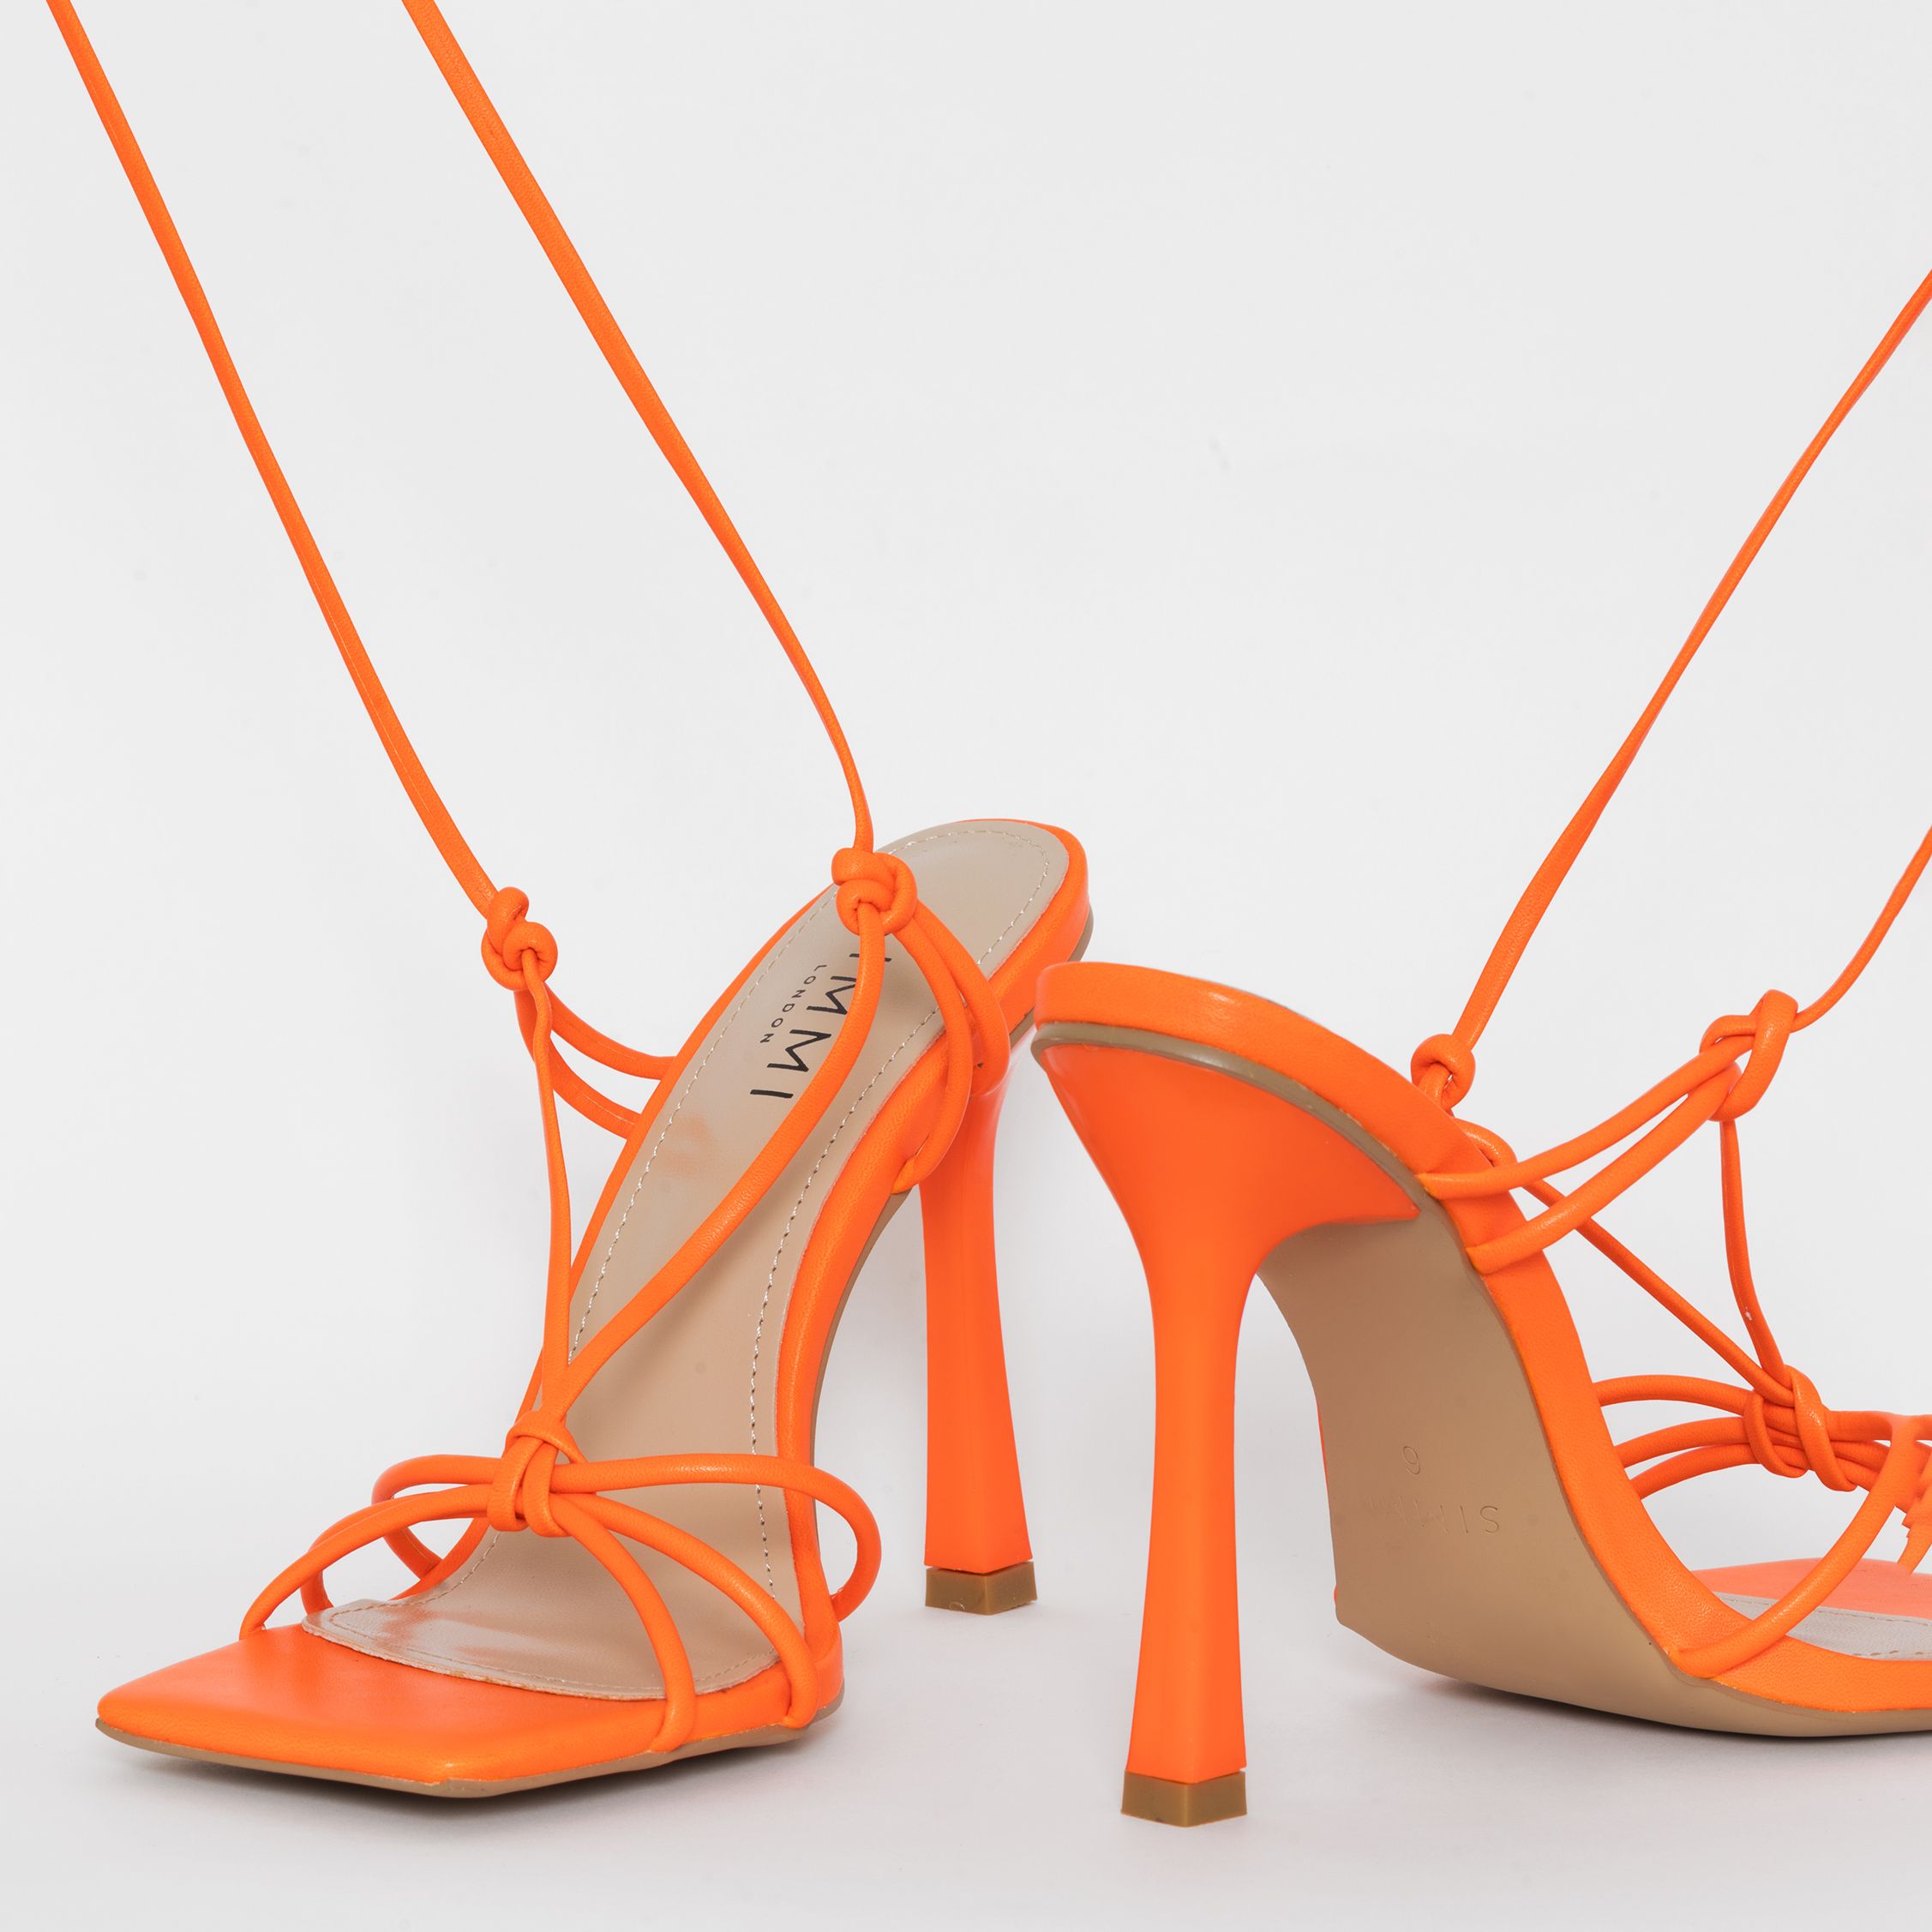 neon heels canada